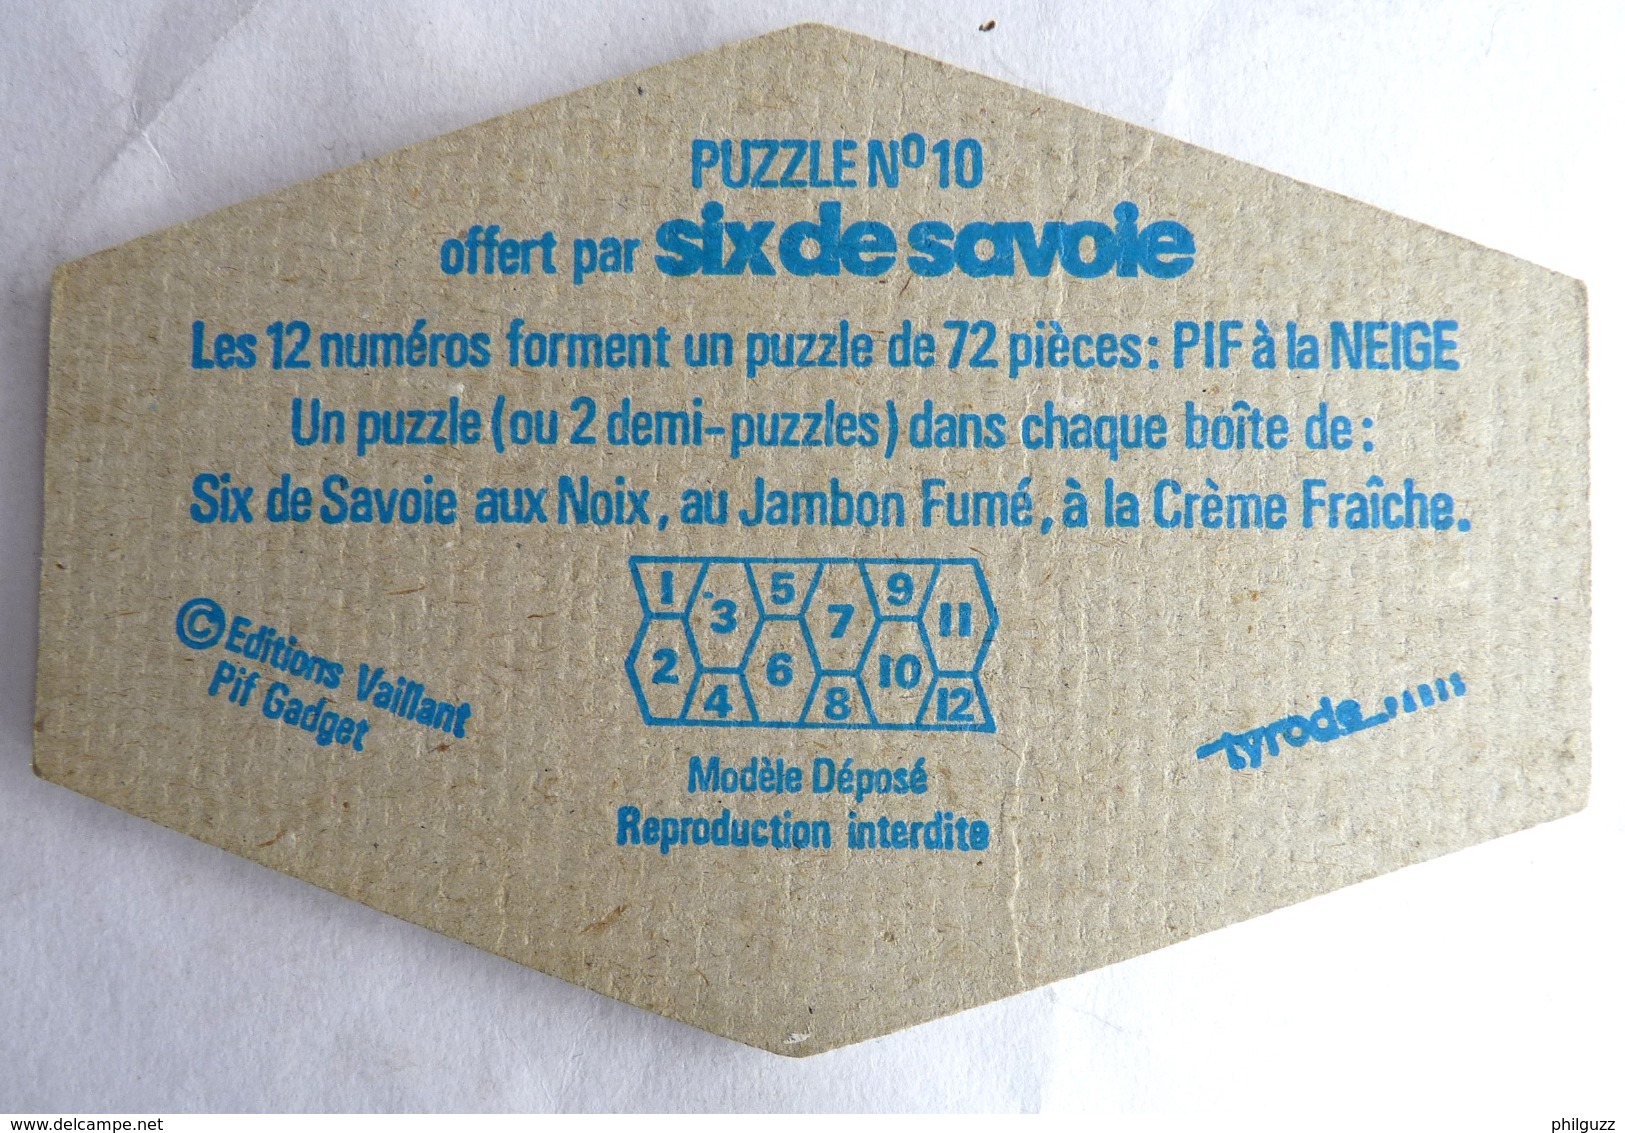 RARE PUZZLE SIX DE SAVOIE PIF N°10 1977 (1) - Puzzels